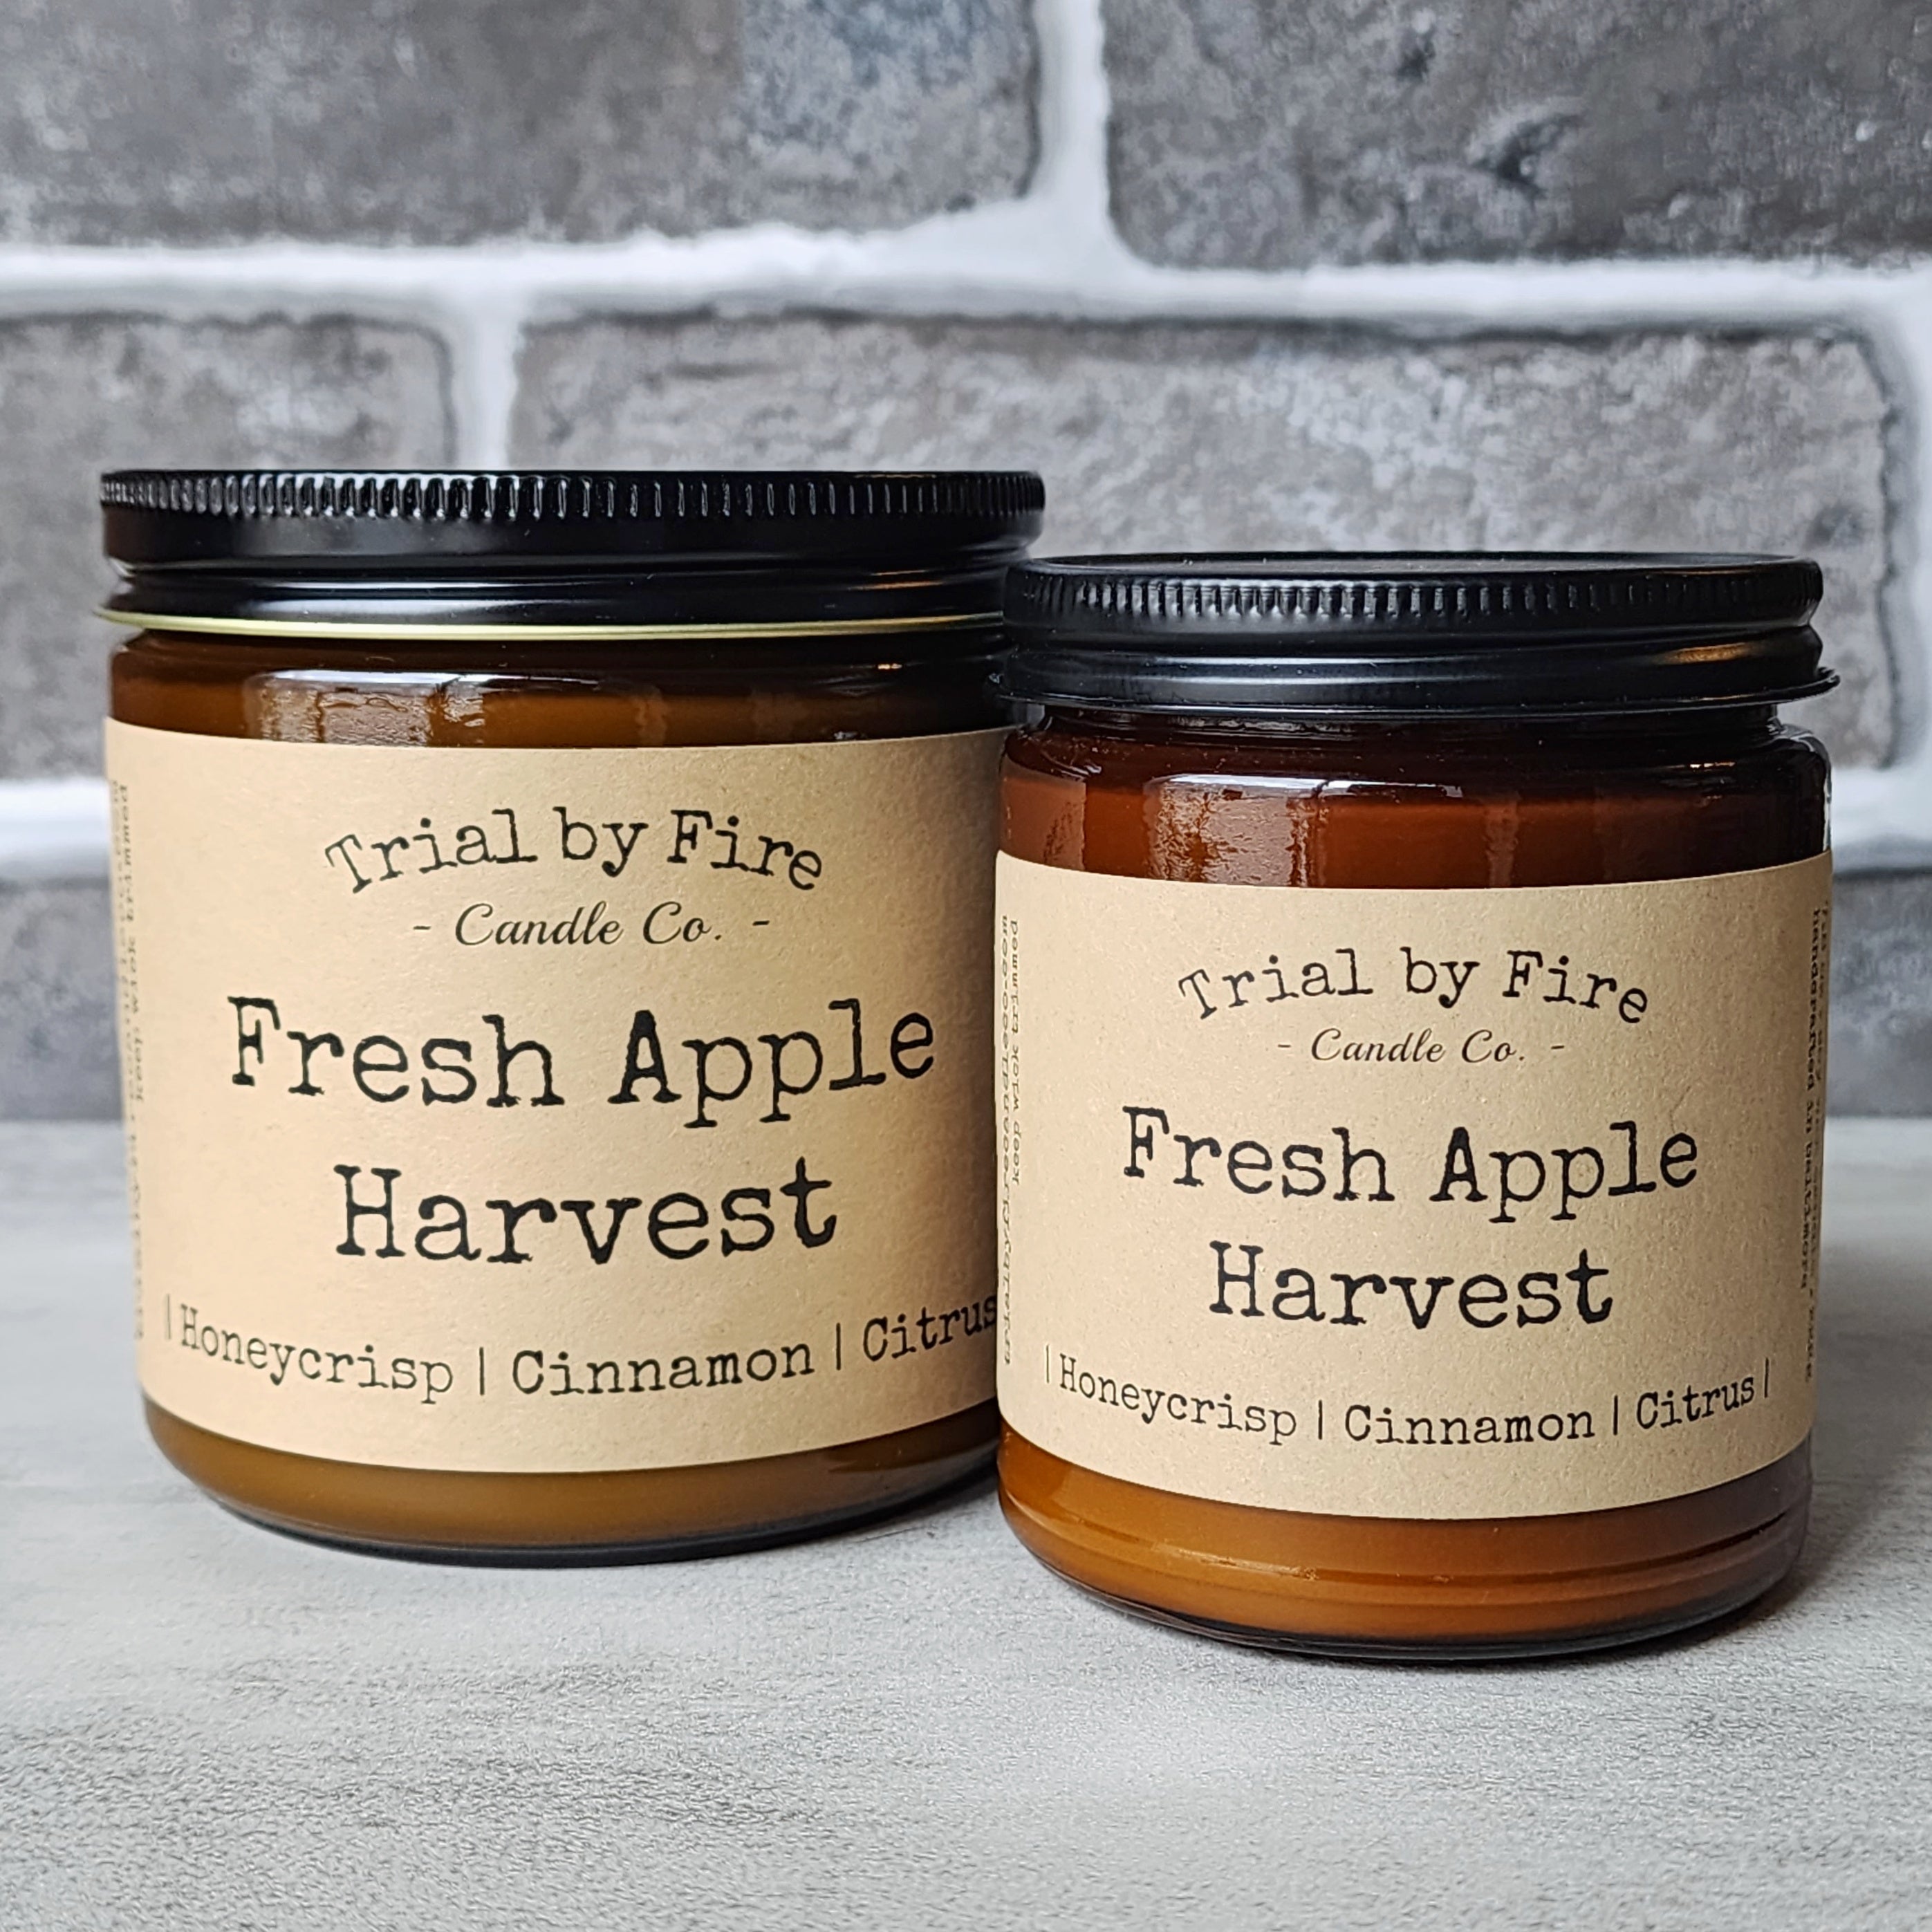 *NEW* Fresh Apple Harvest